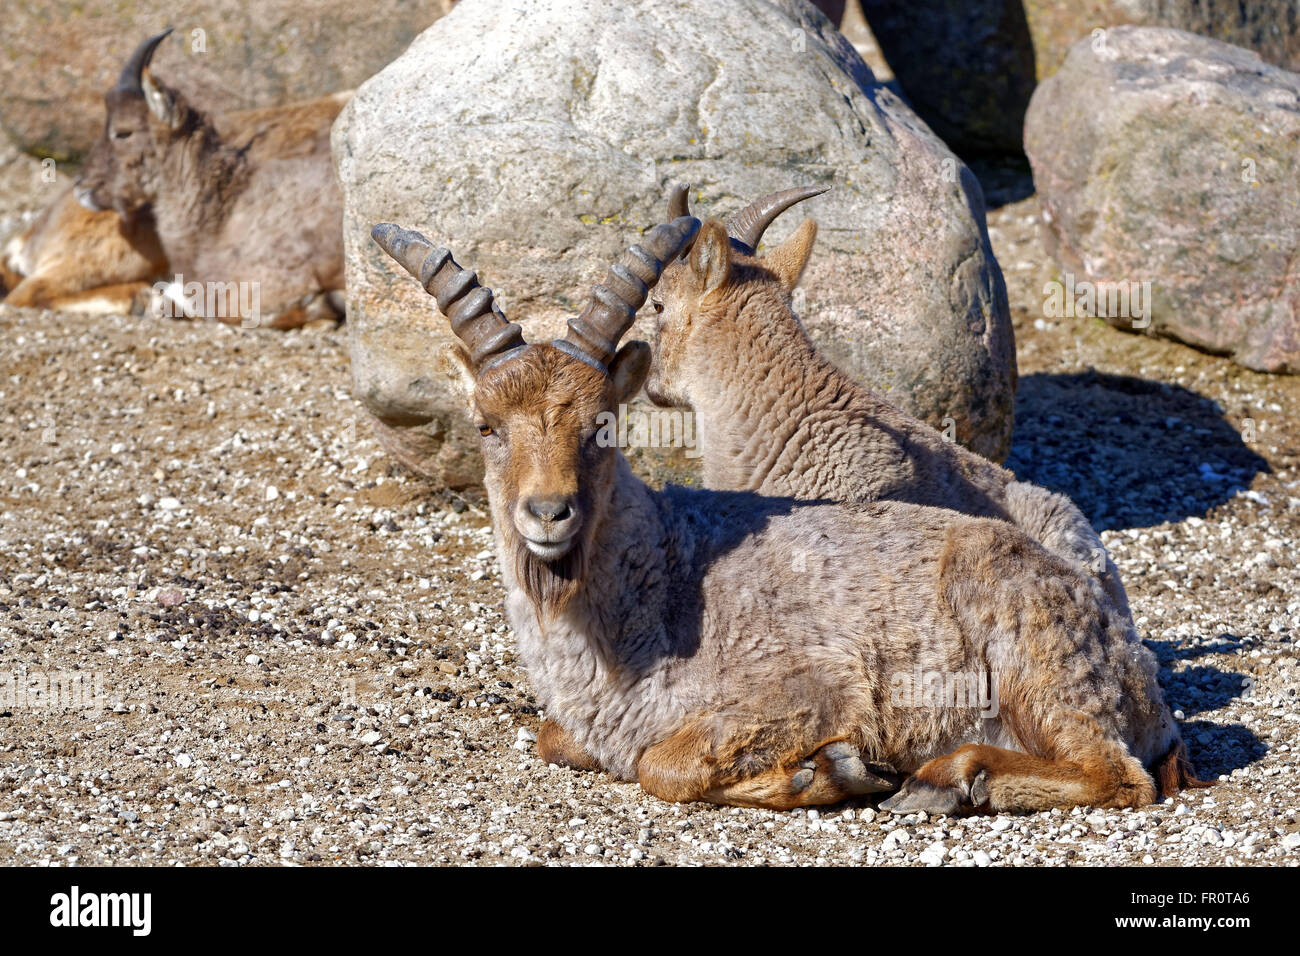 Tur du Caucase de l'Ouest (Capra caucasica syn Capra caucasica caucasica) est une montagne de l'antilope-chèvre dans l'ouest du Caucase. Banque D'Images